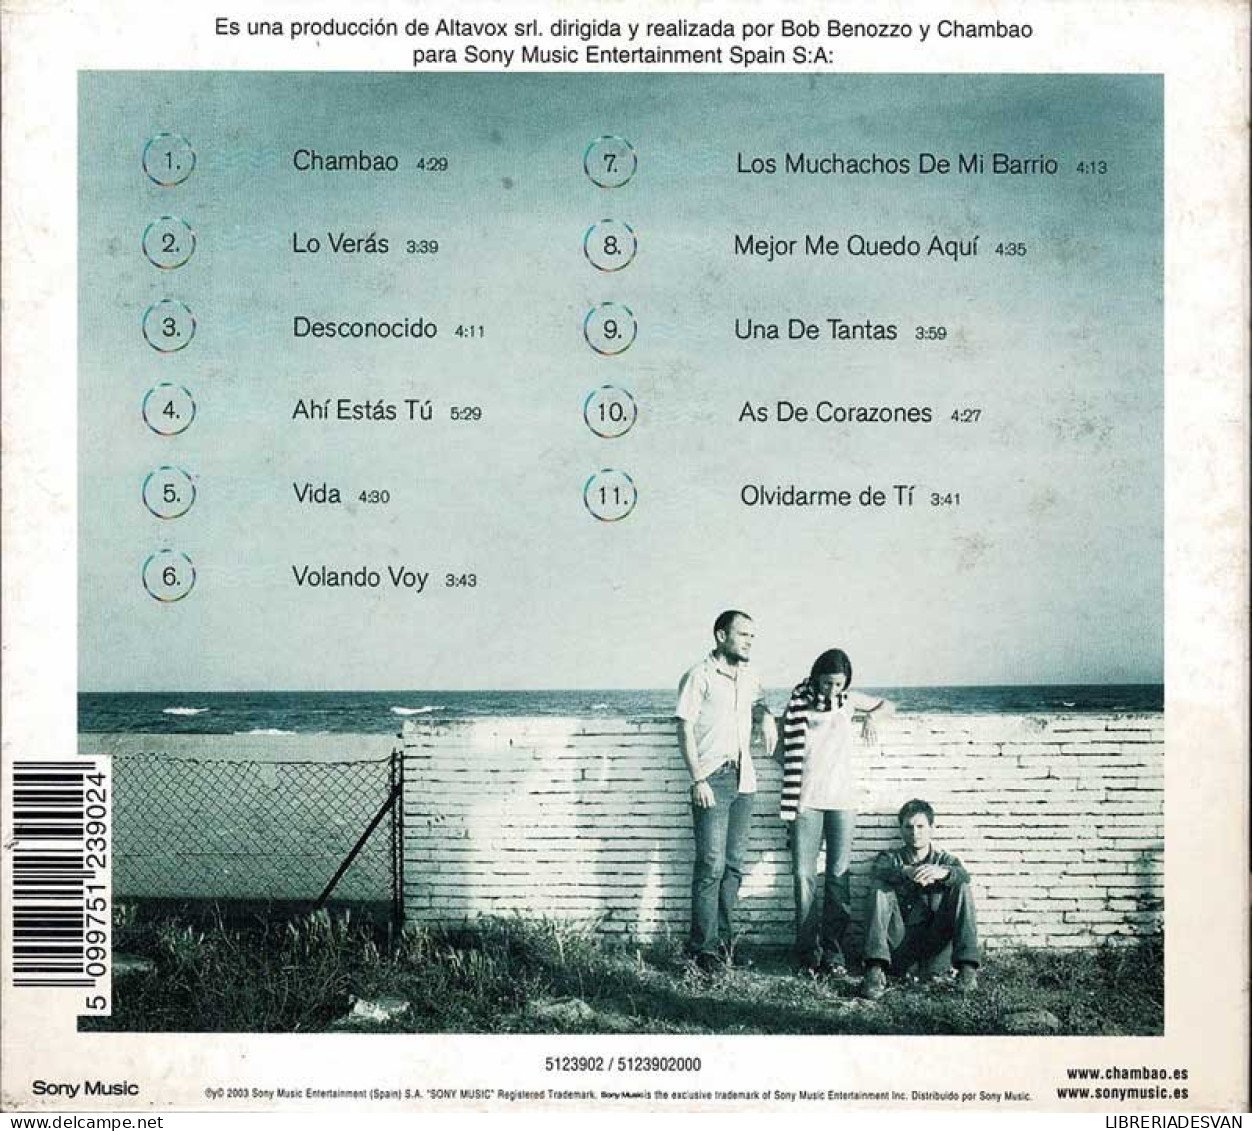 Chambao - Endorfinas En La Mente. CD - Autres - Musique Espagnole